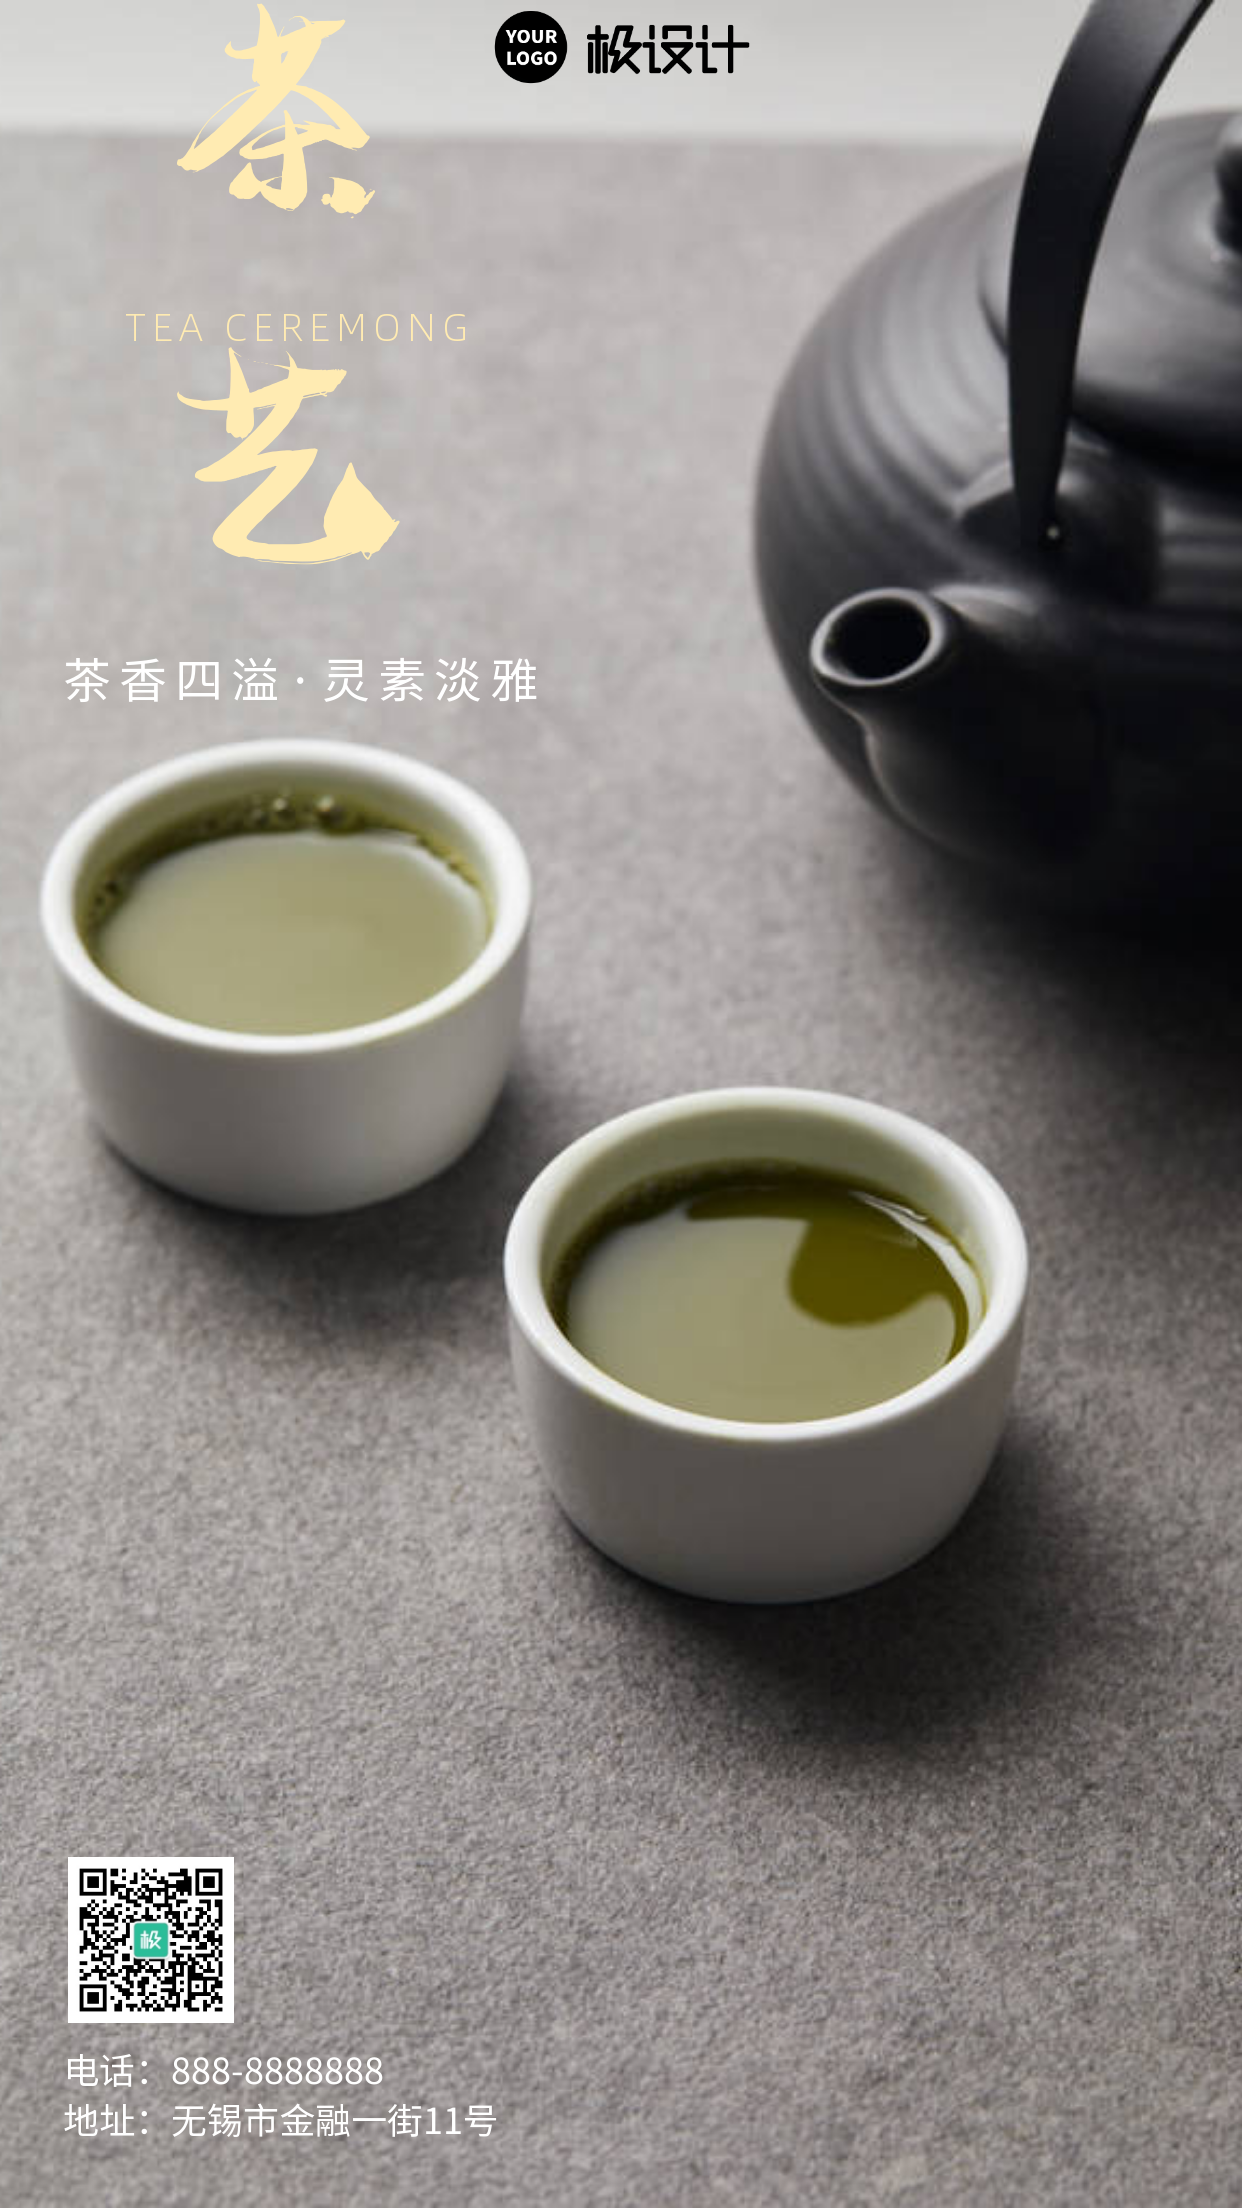 传统茶艺深色配图简约大气宣传海报